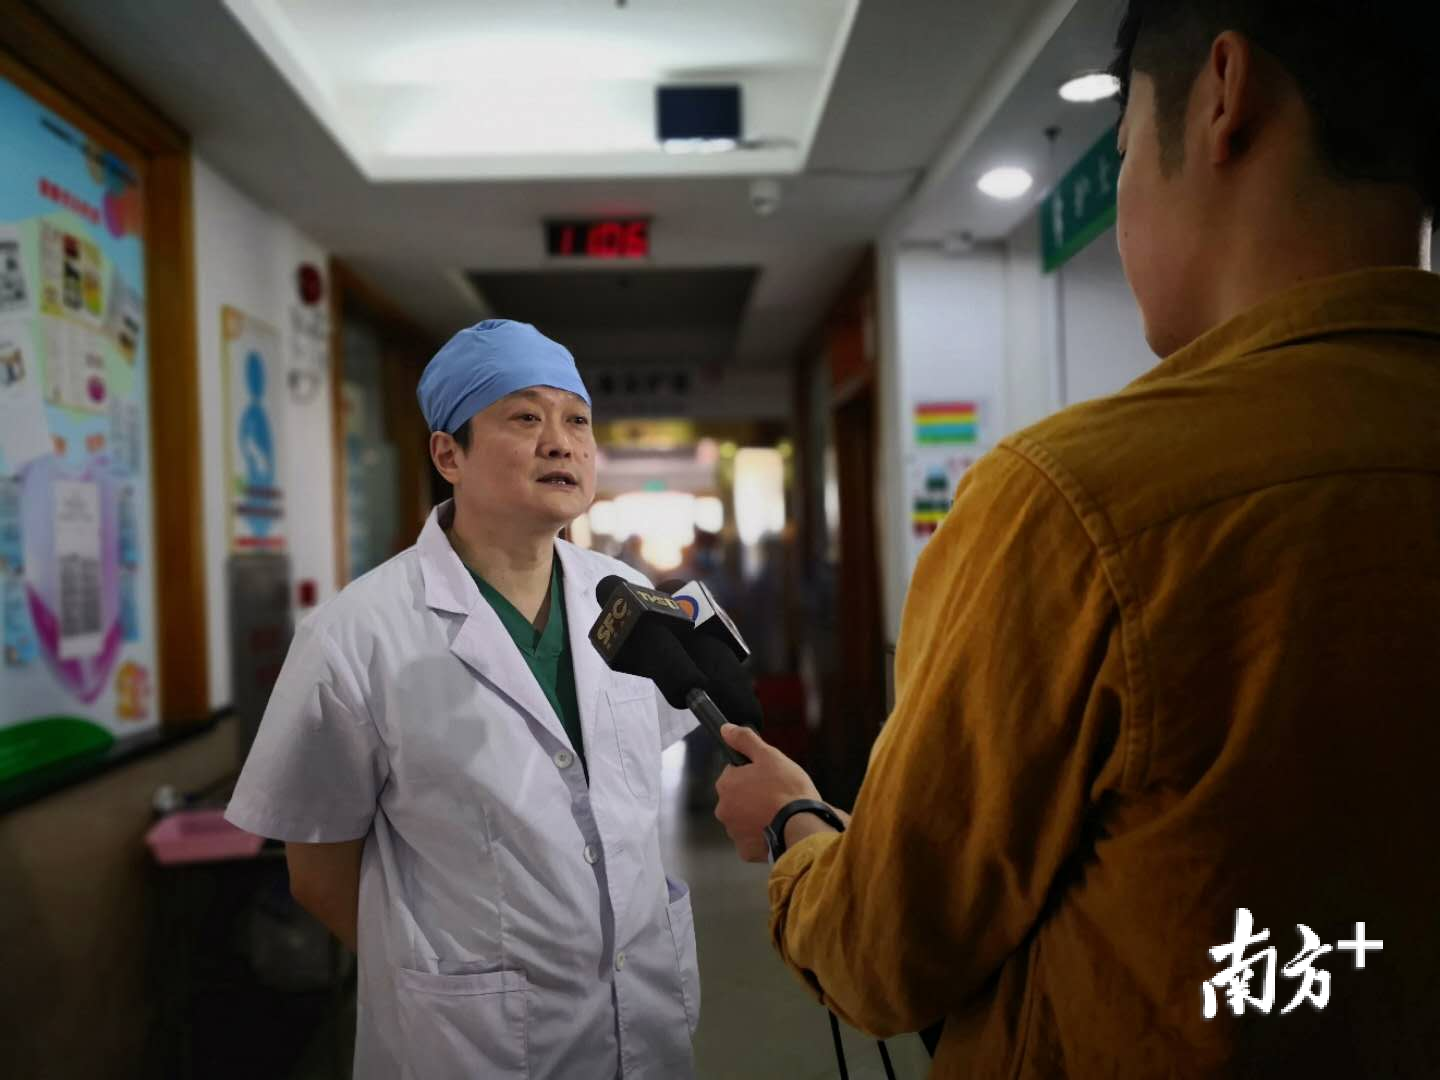 主刀的广州市妇儿中心心脏中心主任陈欣欣接受媒体采访